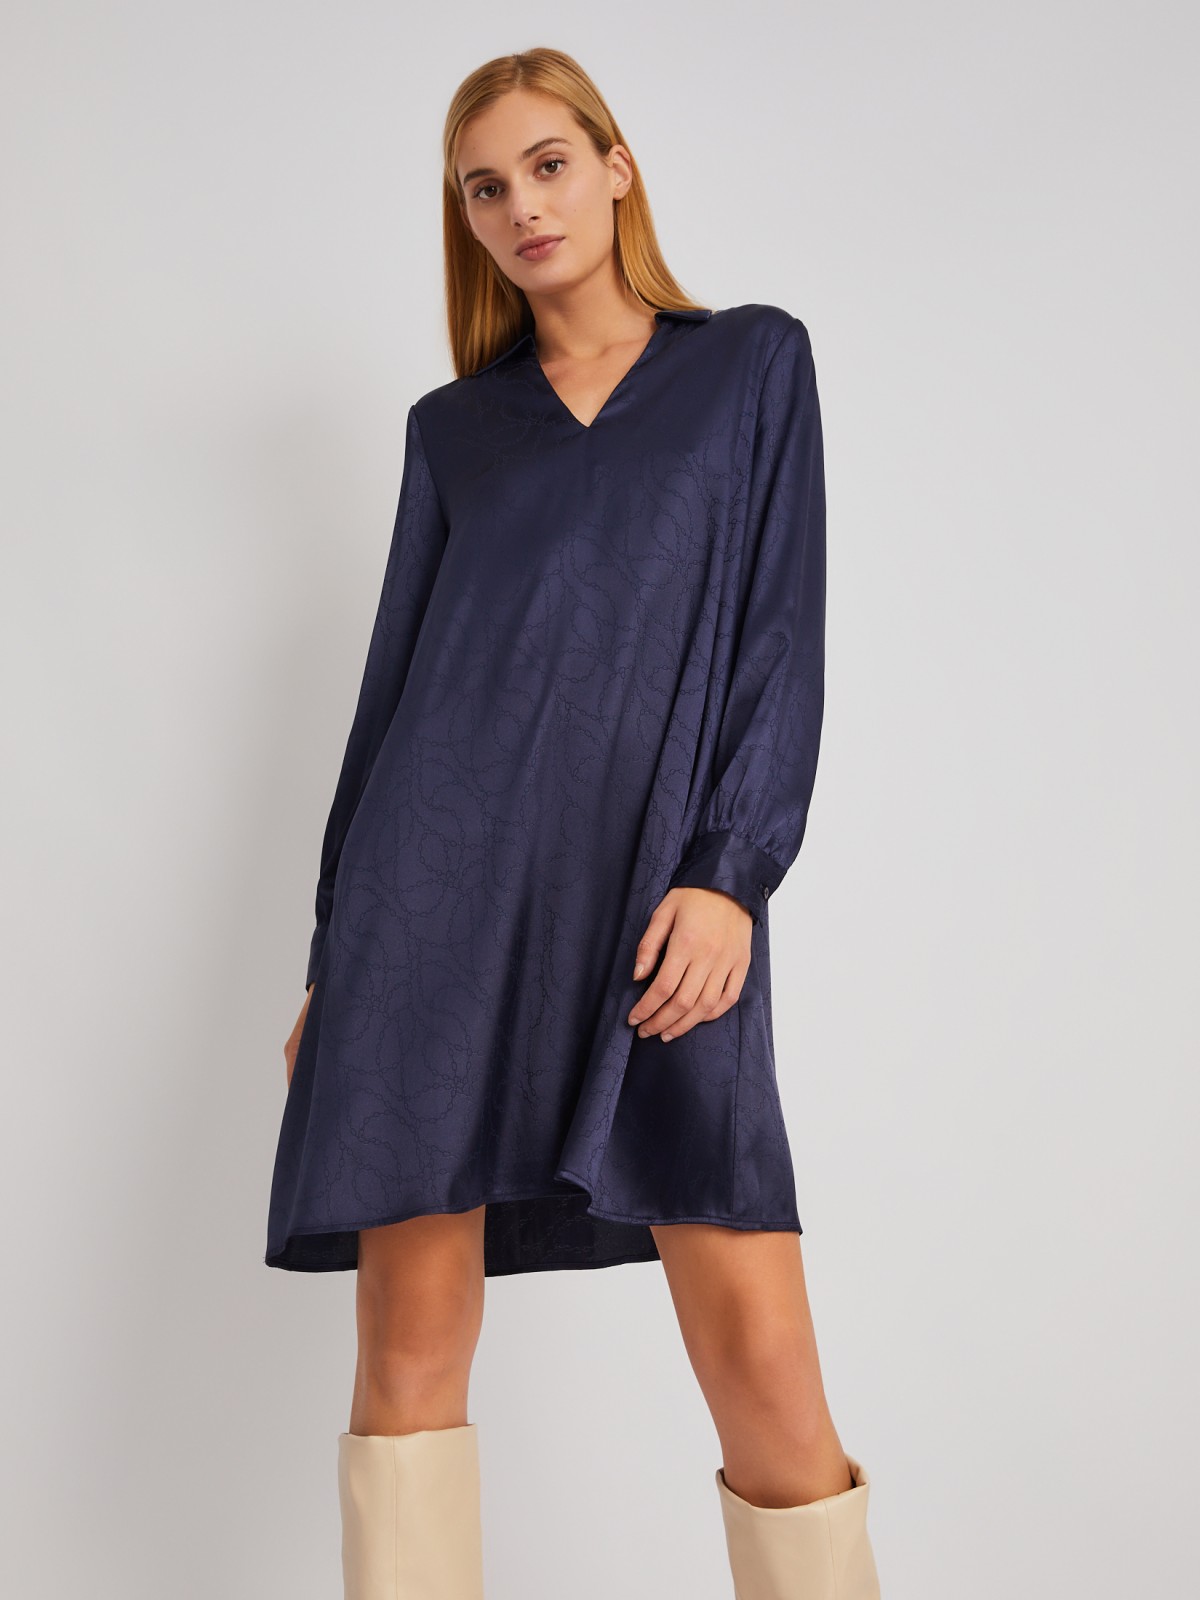 Атласное платье длины мини с воротником и акцентном на талии zolla 024118262193, цвет синий, размер XS - фото 1